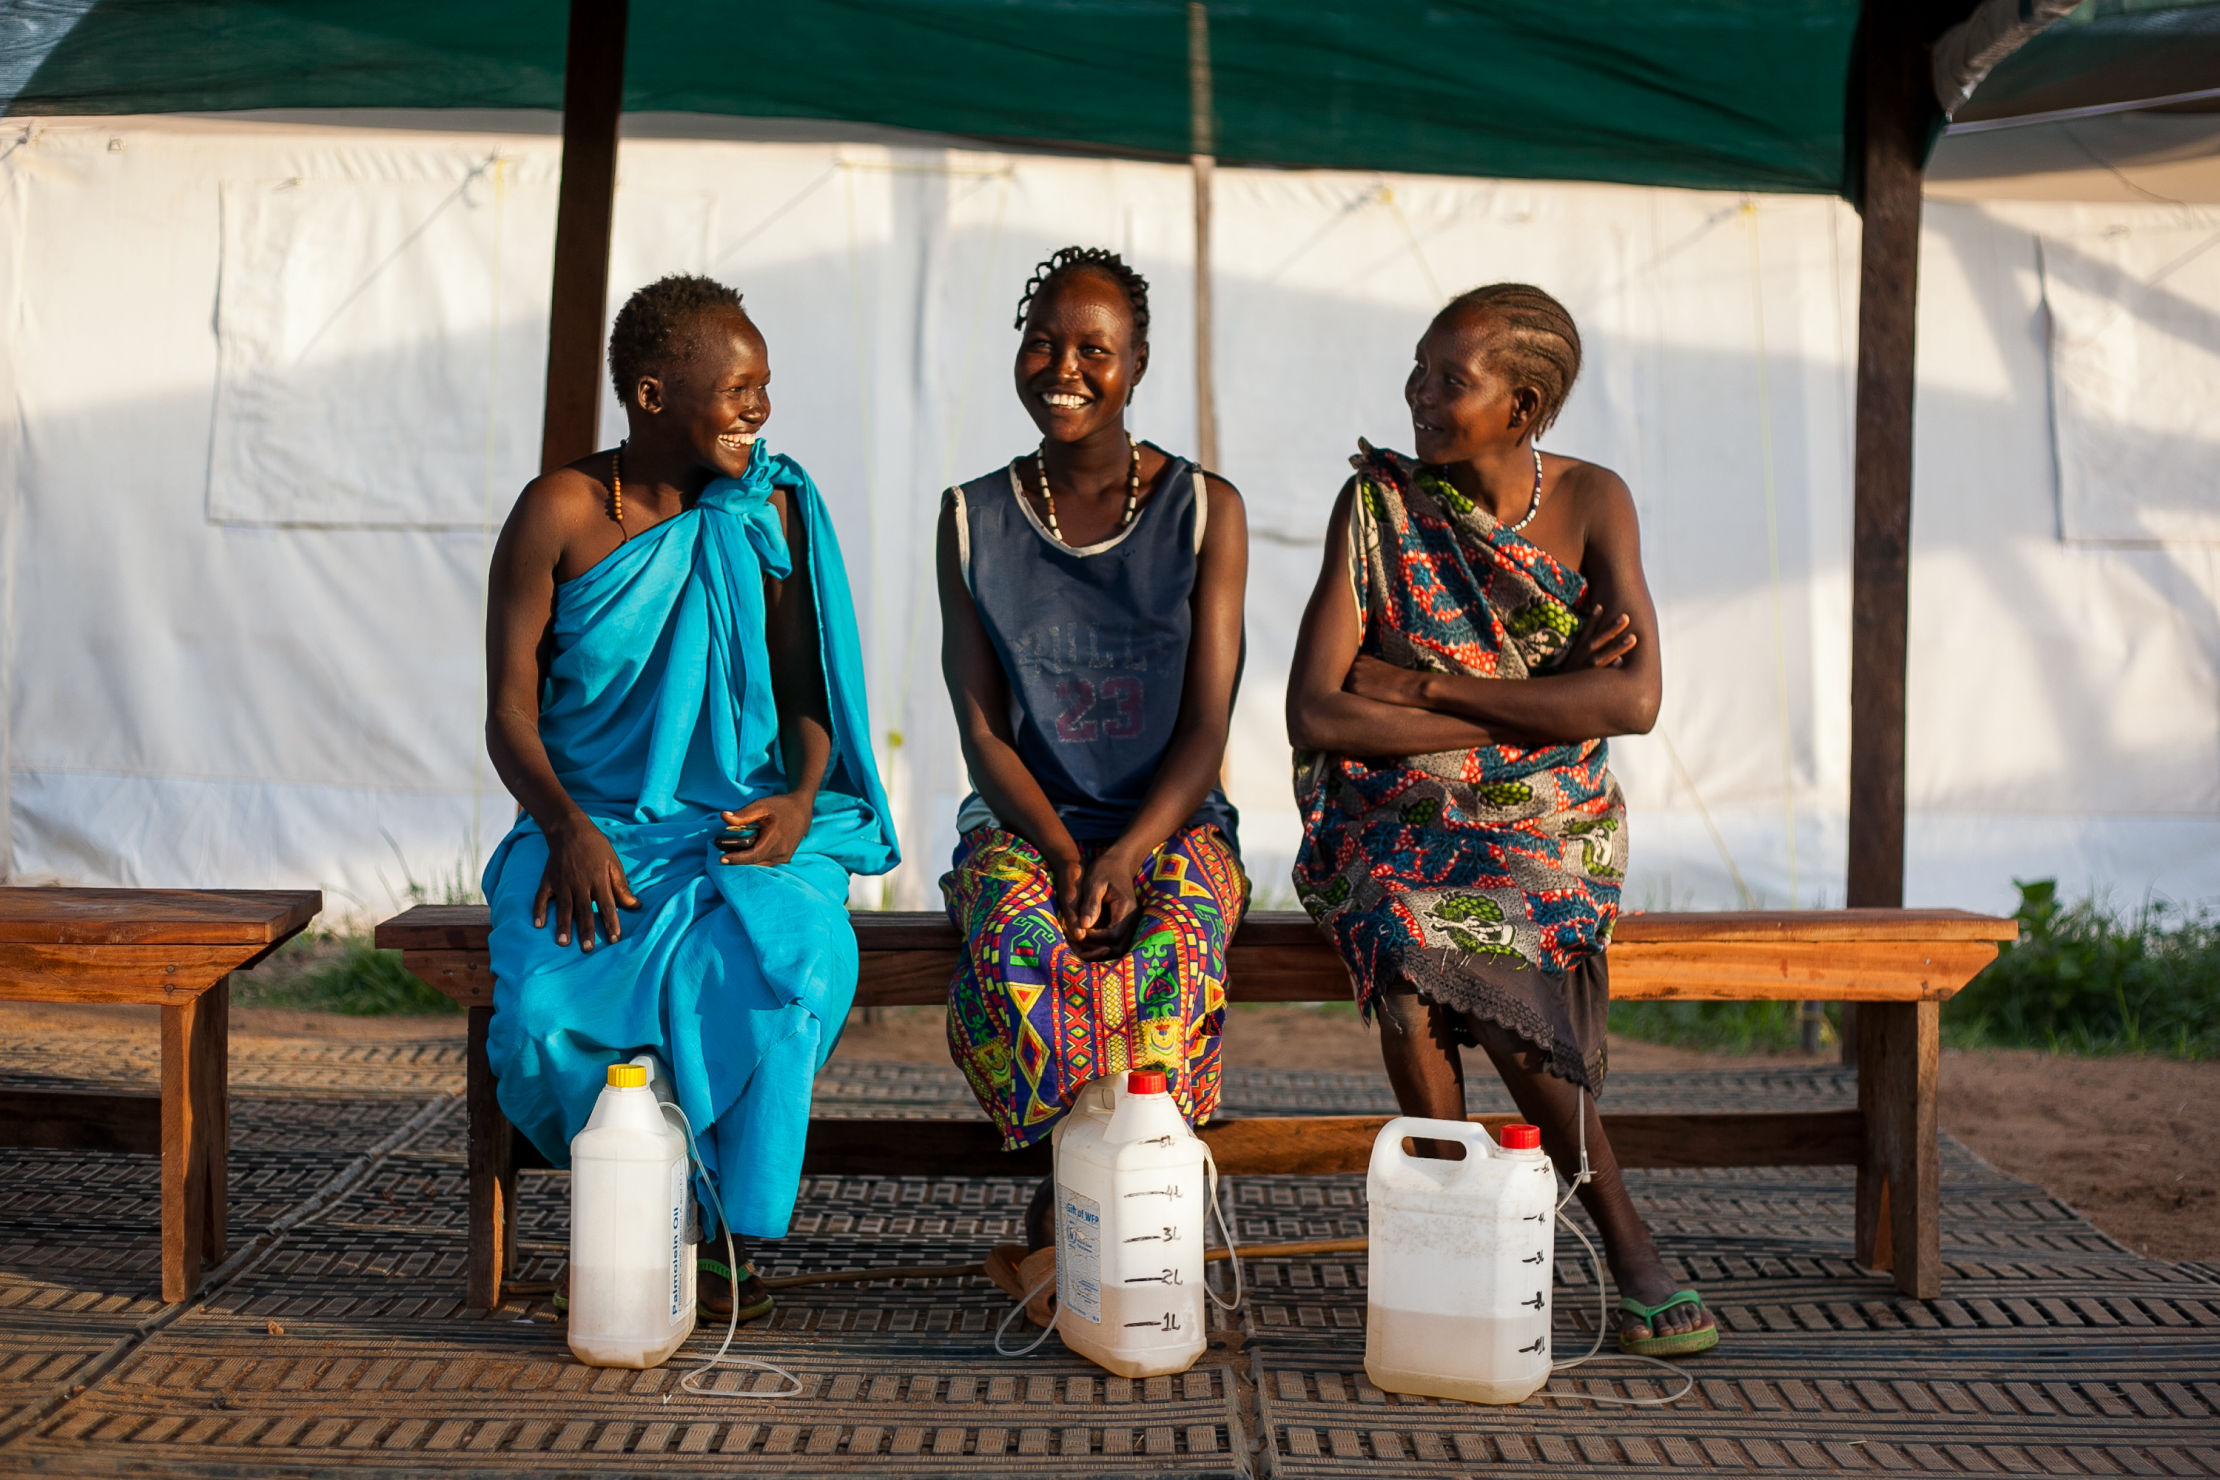 Patientes atteintes de fistule obstétricale. Soudan du Sud, 2012. Photo : Isabel Corthier / MSF.